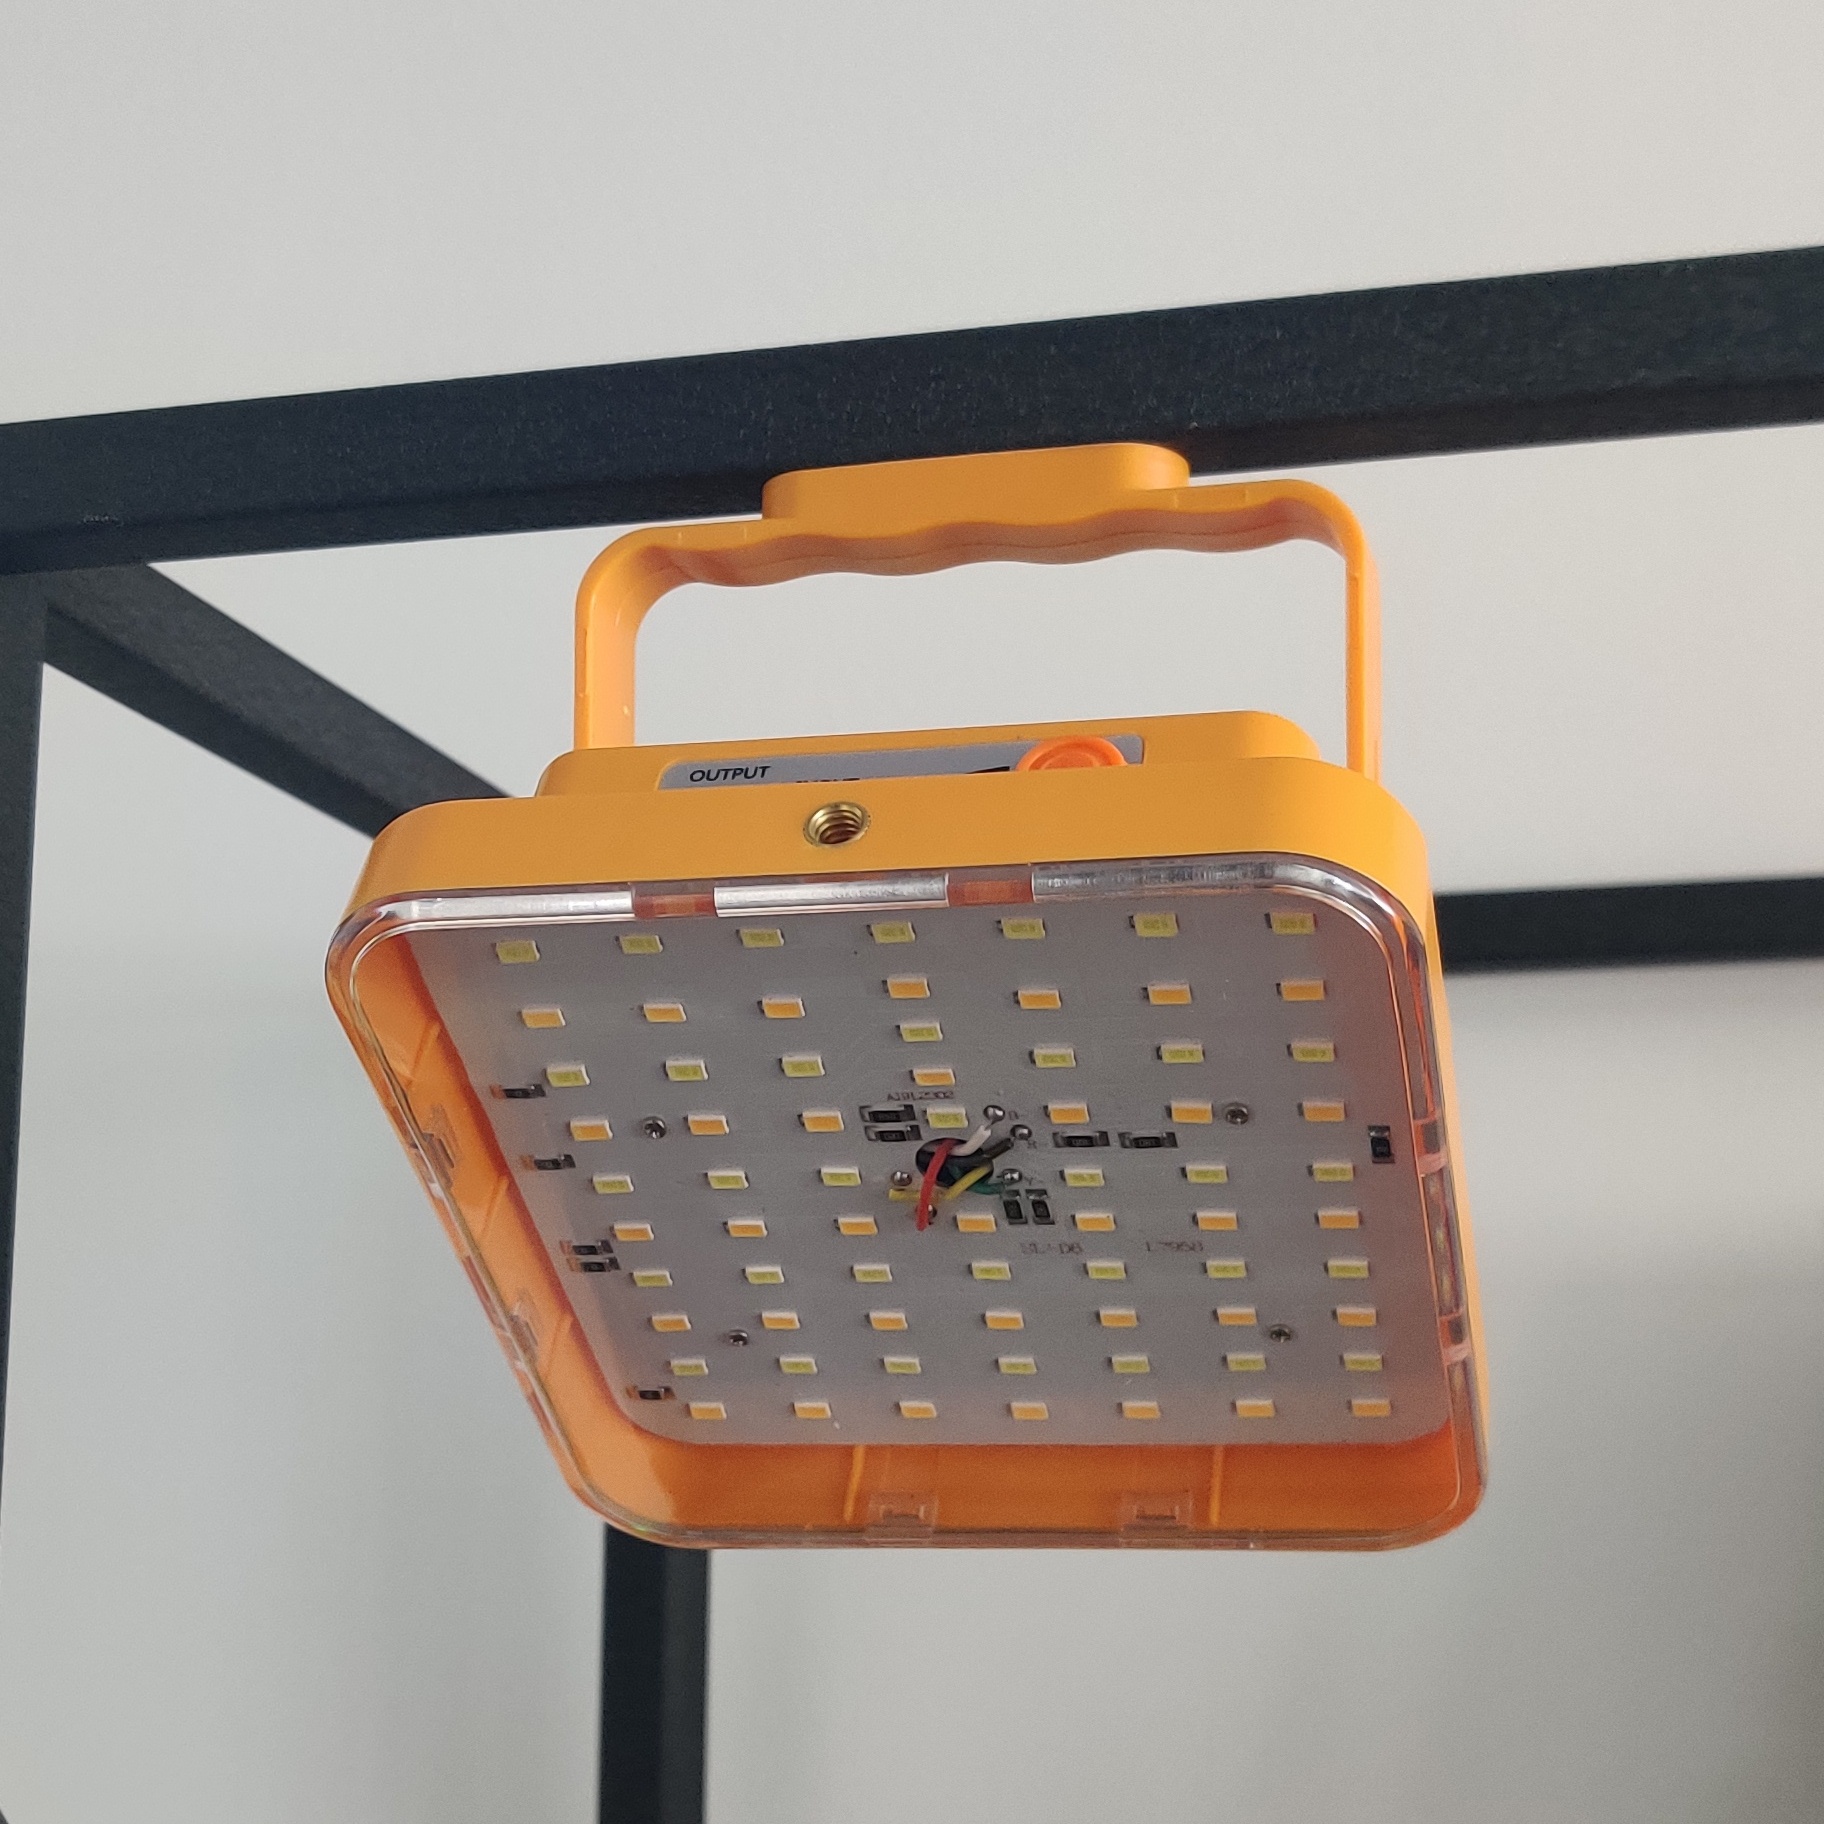 LED Work Light Flood Spot Lamp For Camping Fishing Lighting Emergency Lighting USB Charging & Solar Powered